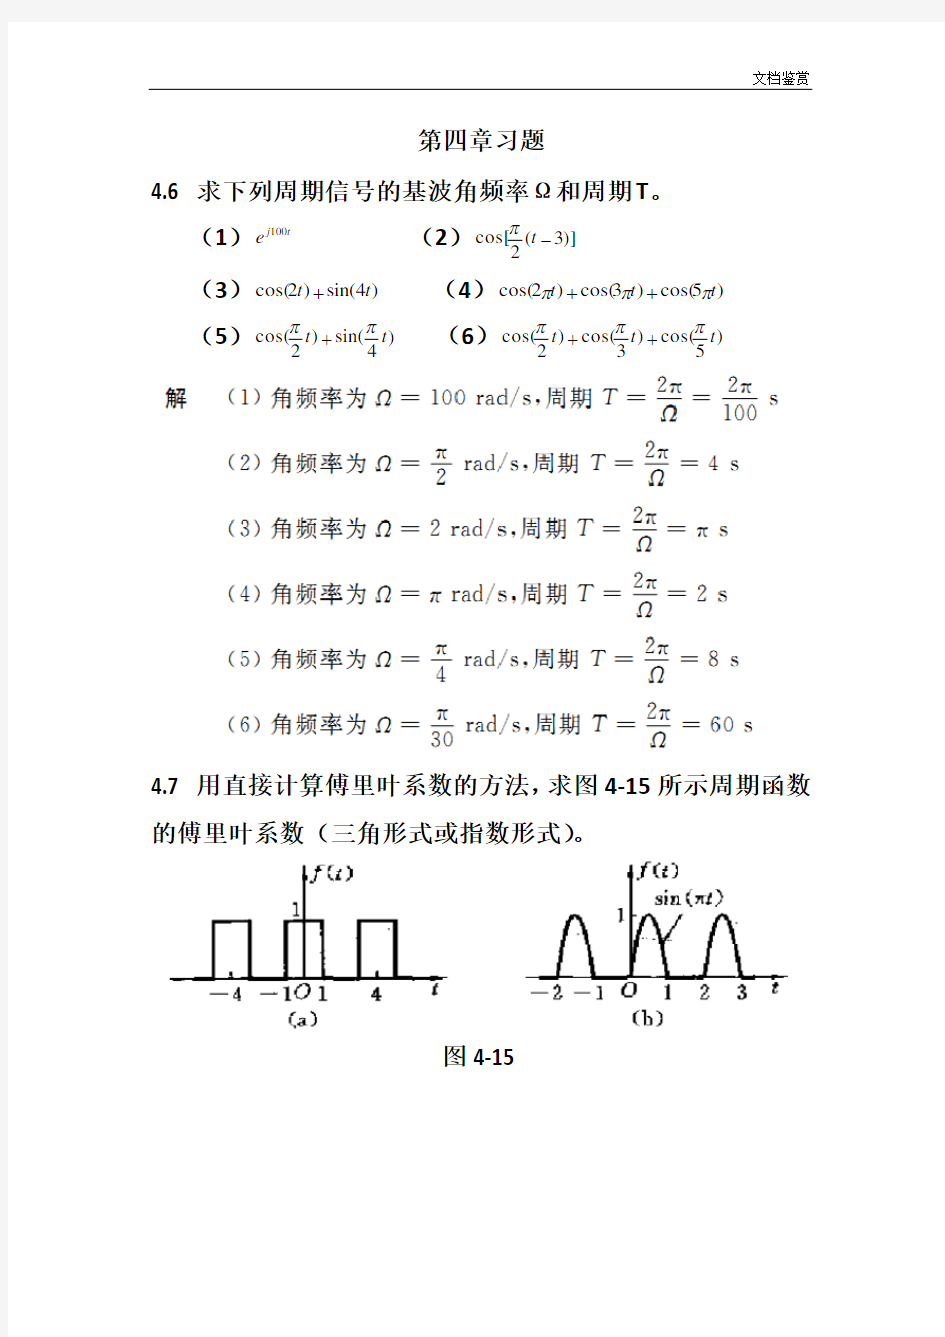 信号与线性系统分析 (吴大正 第四版)第四章习题答案